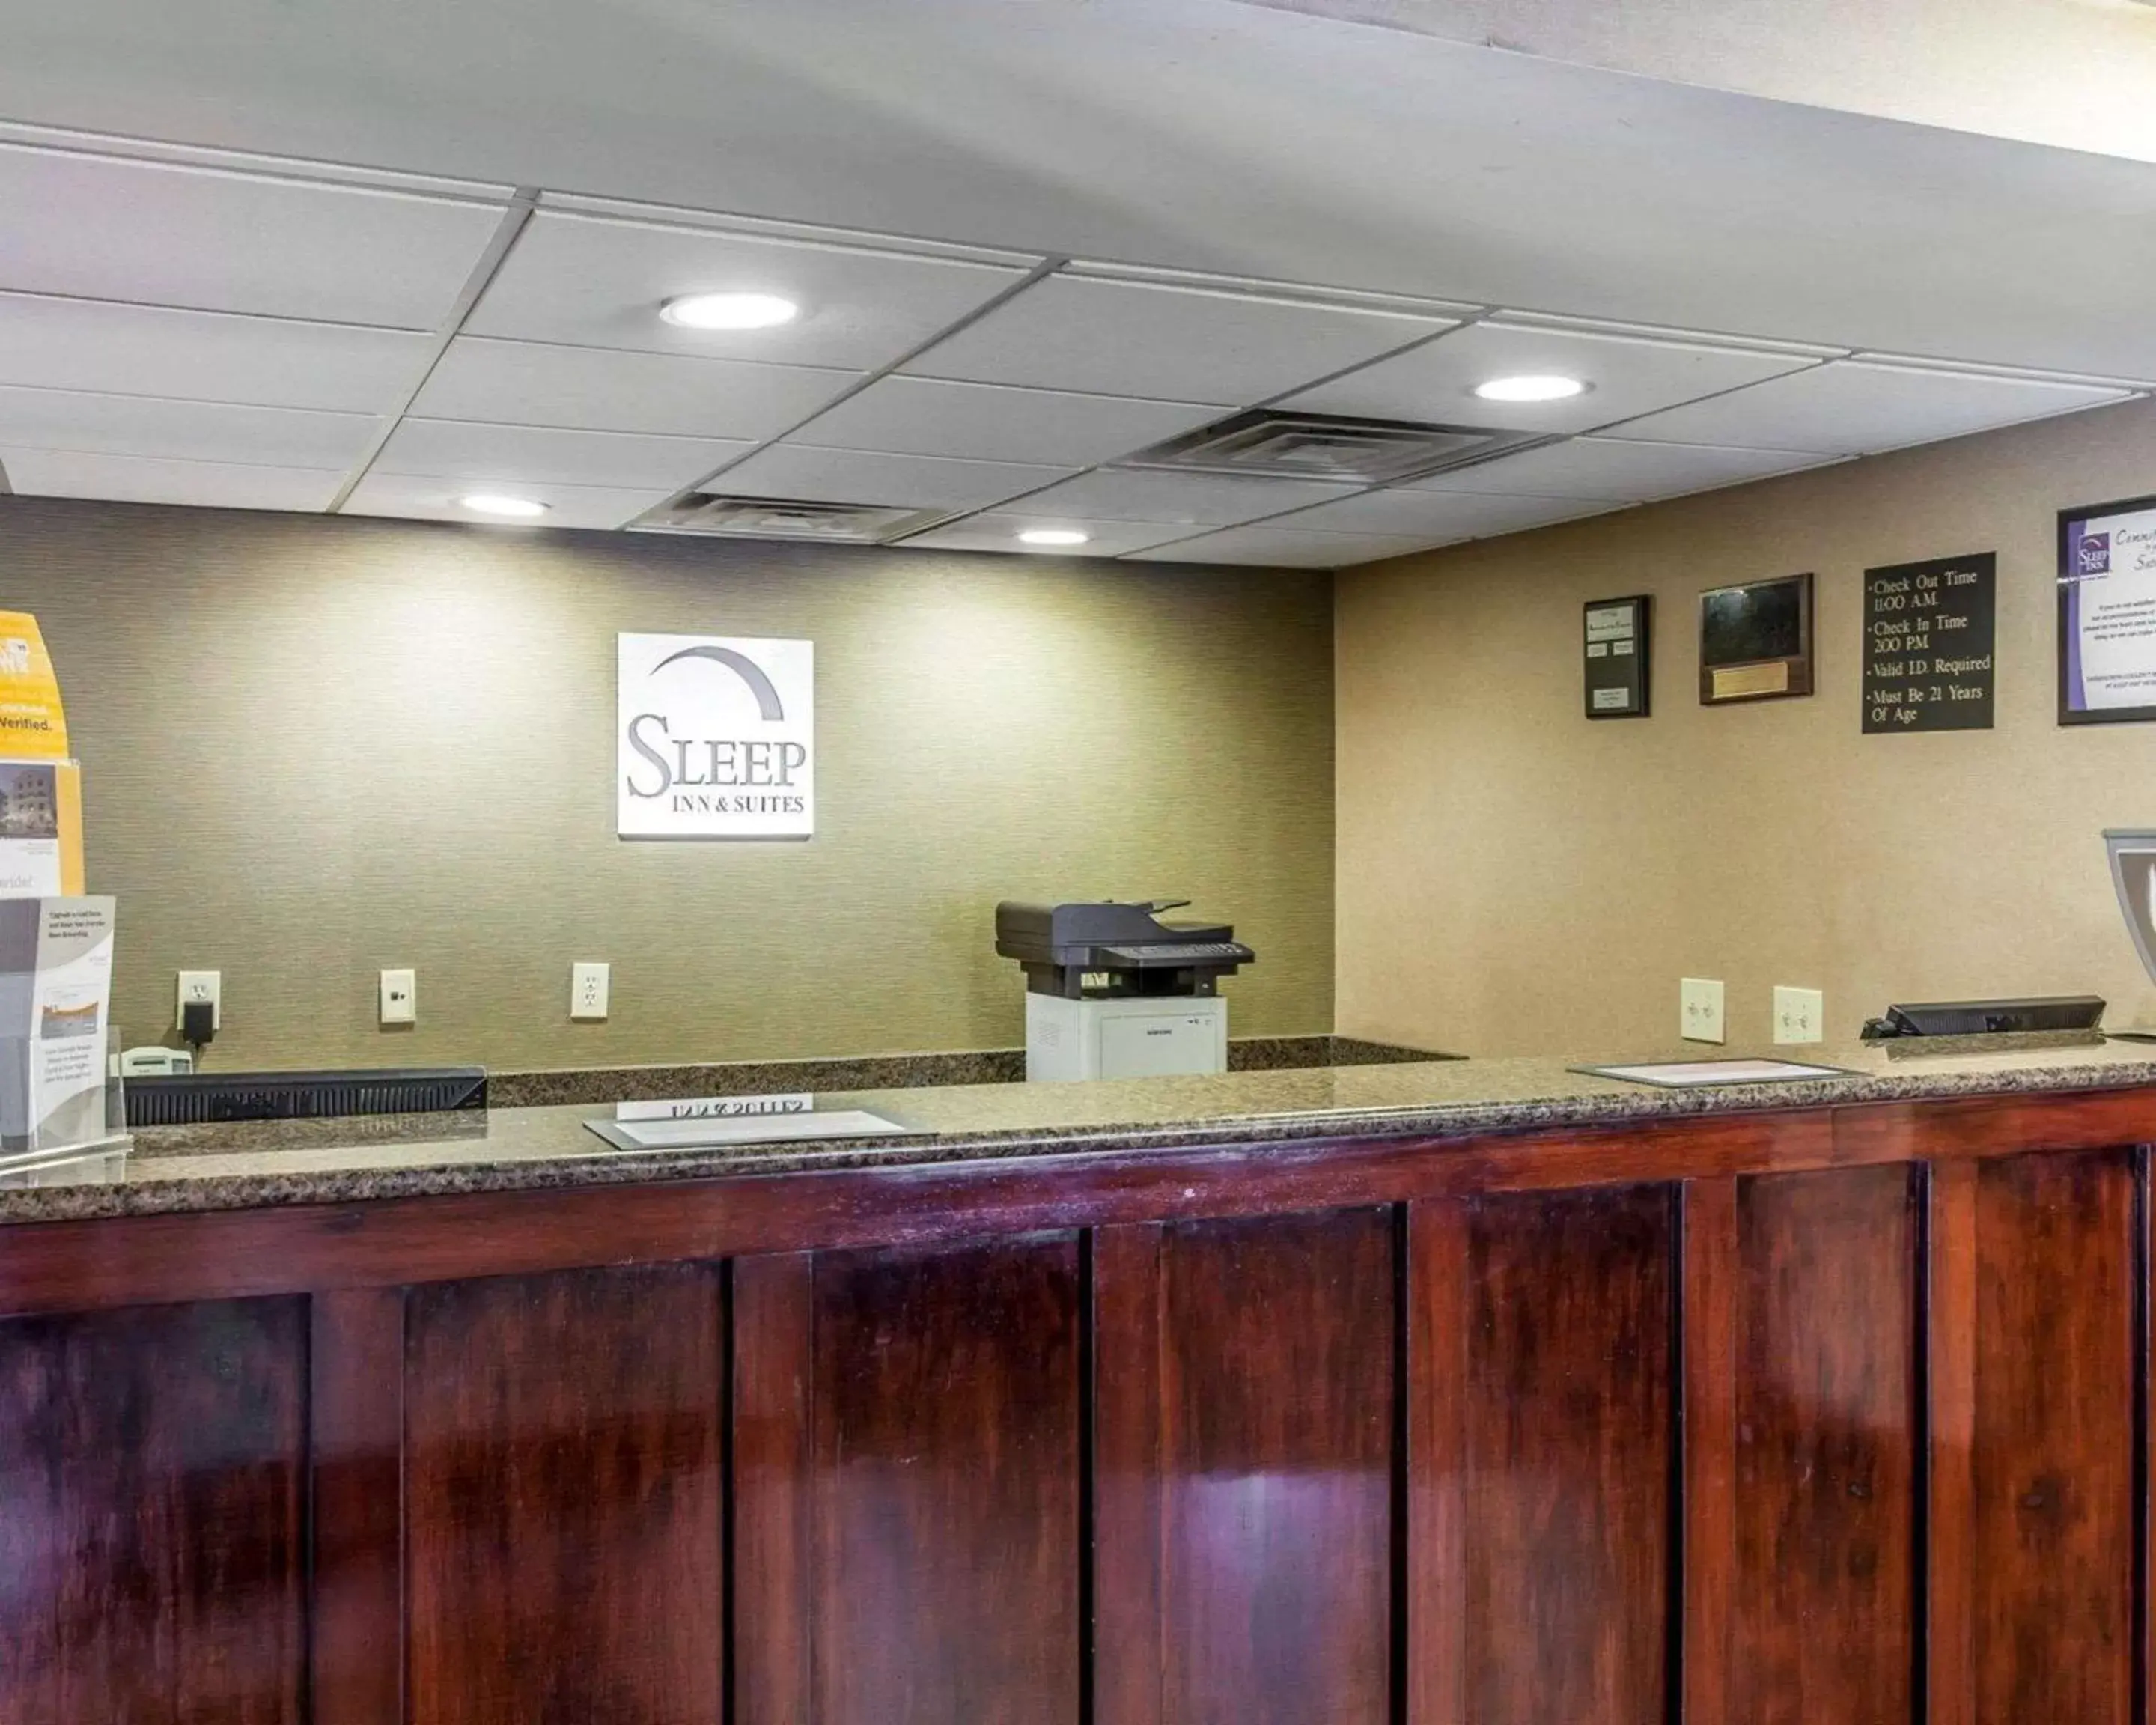 Lobby or reception, Lobby/Reception in Sleep Inn & Suites near Joint Base Andrews-Washington Area